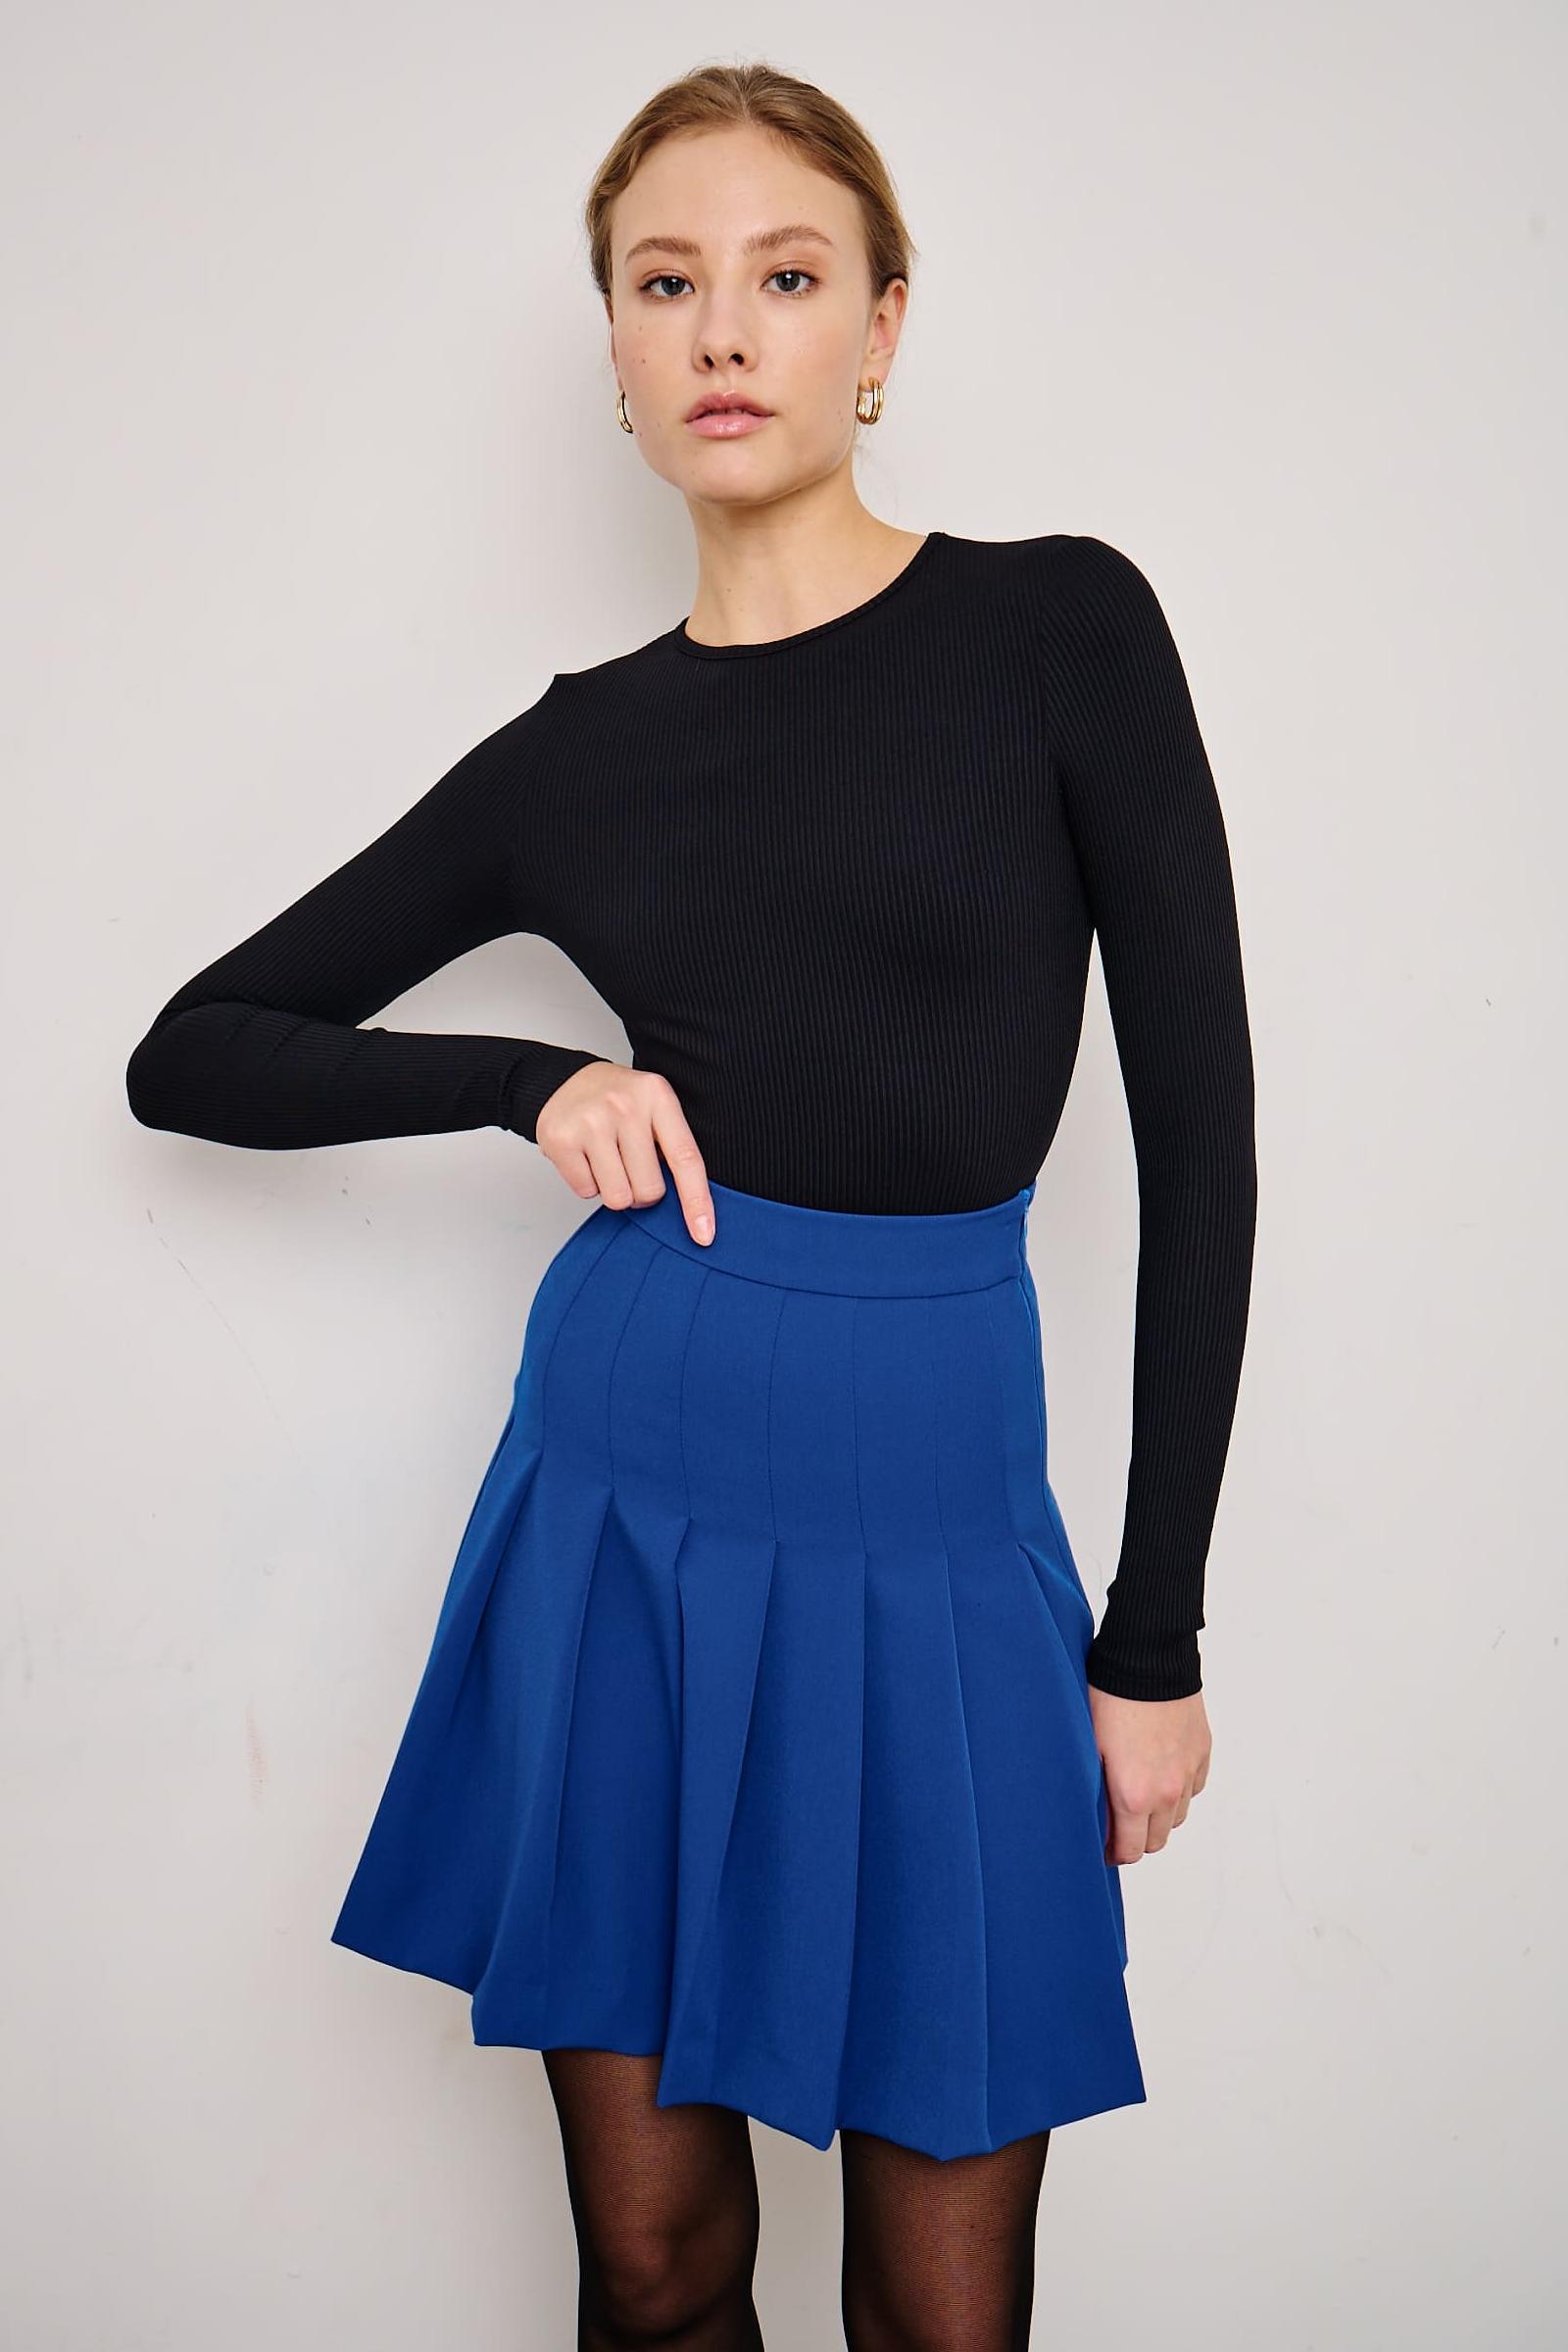 Юбка мини в складку (синий) inspire юбка длины мини в складку черный